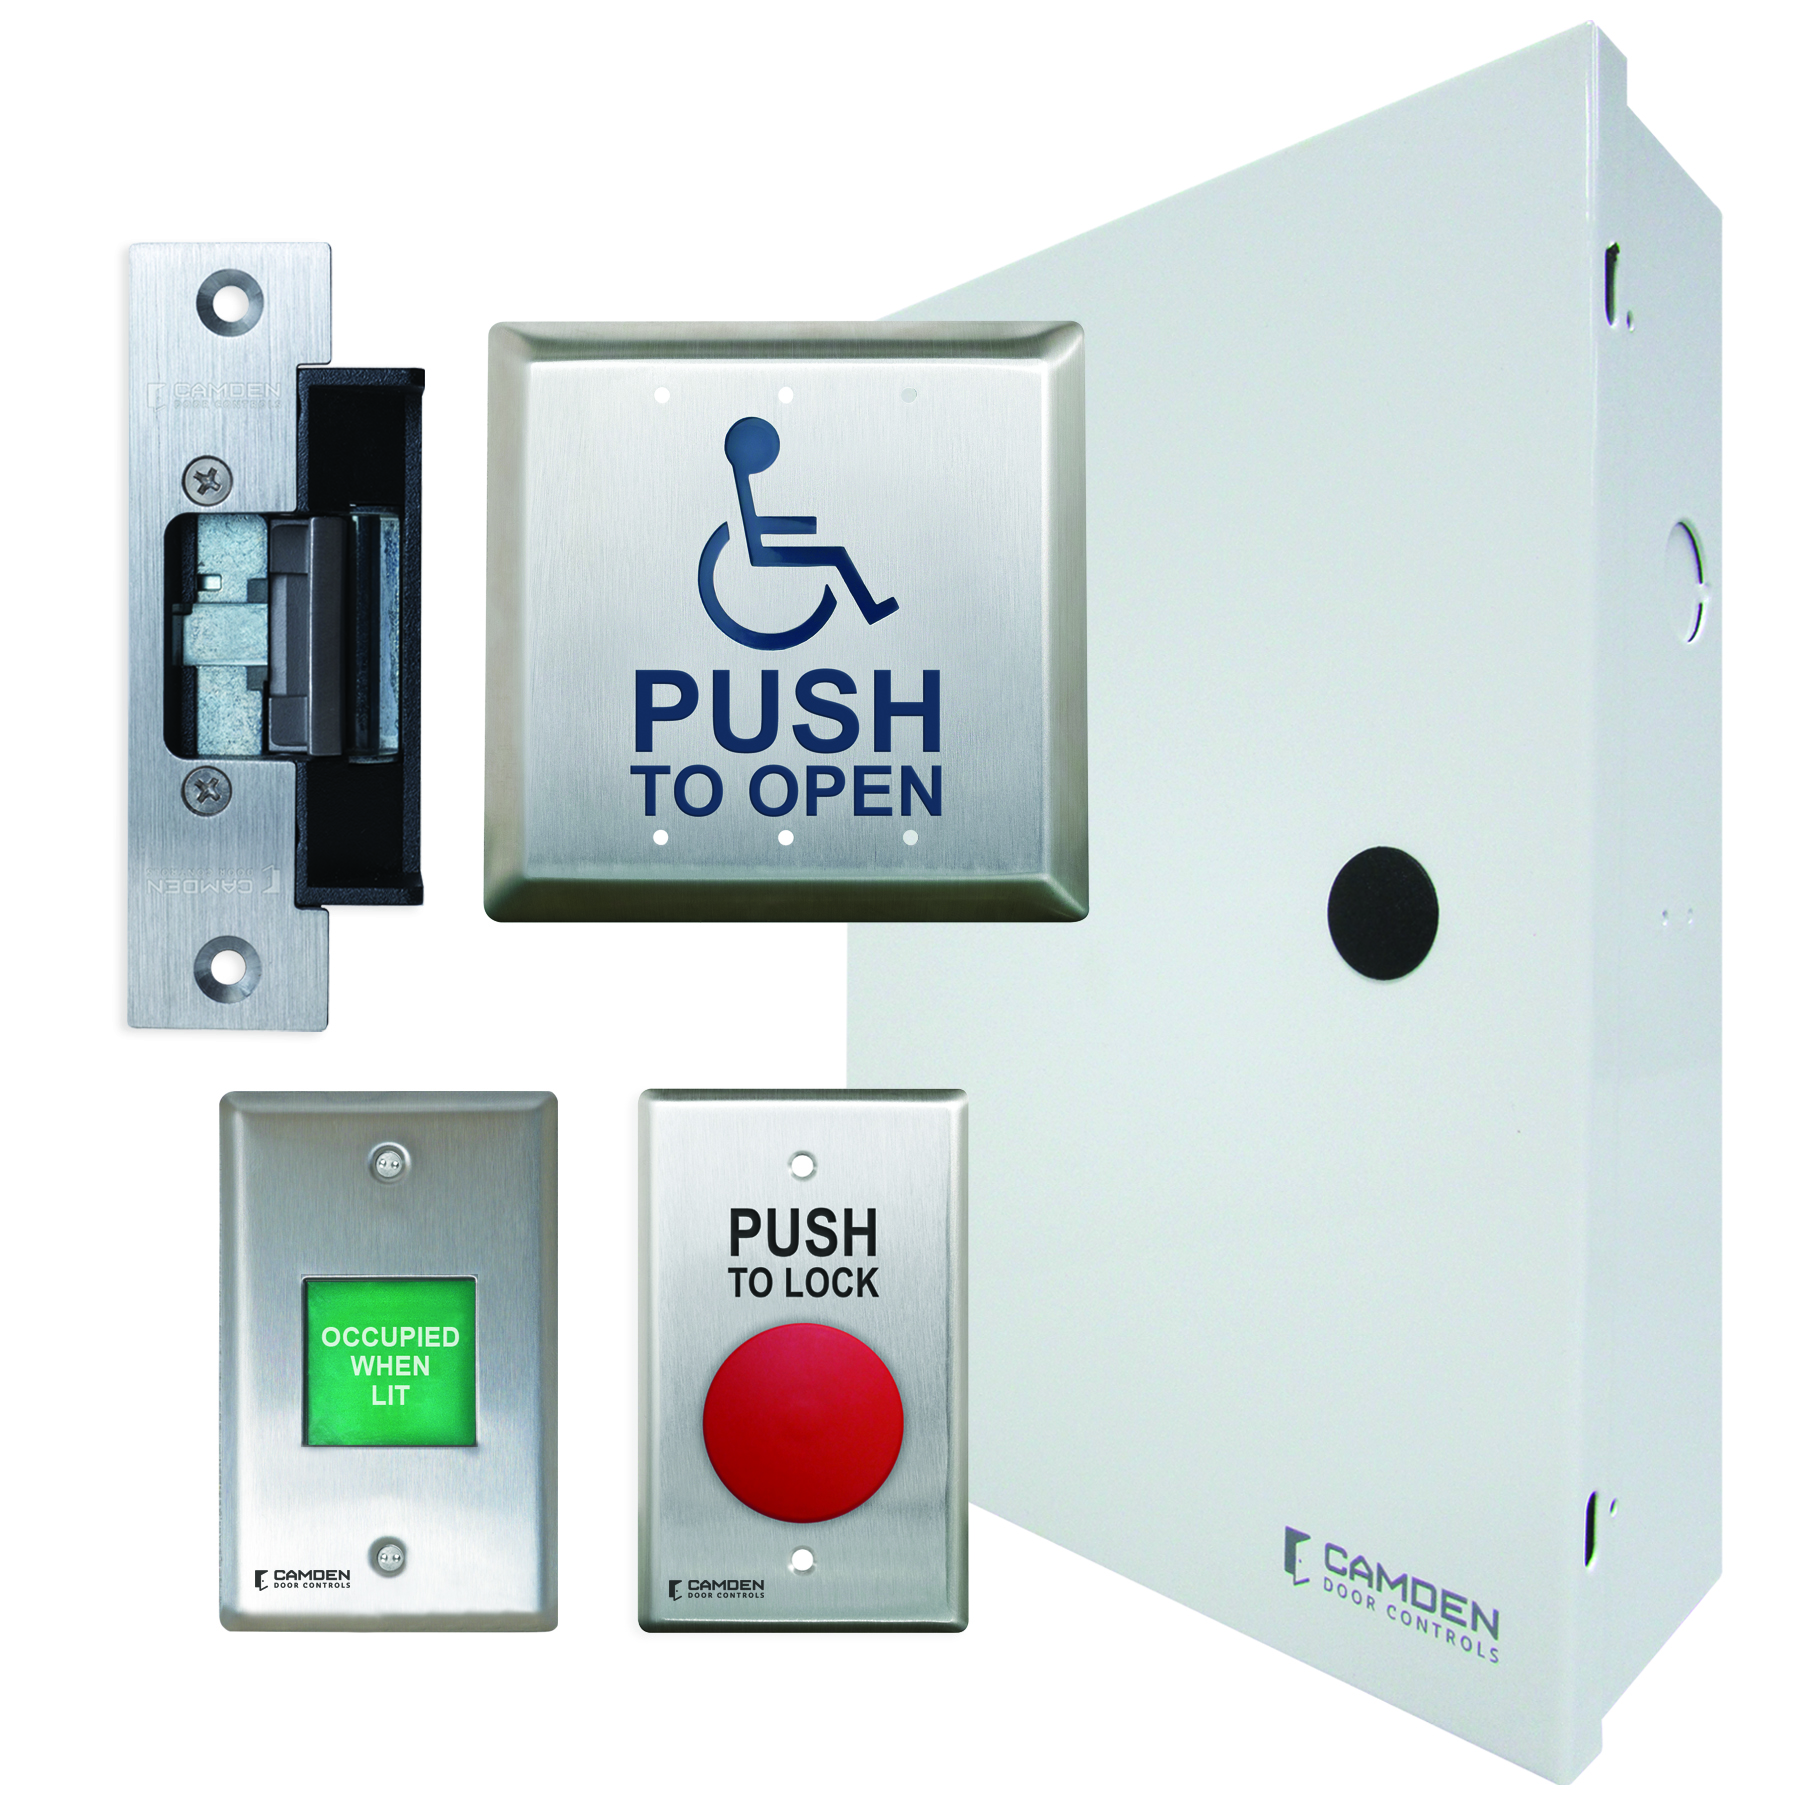 CM-160, CM-170, CM-180 Series: Interruptores de llave para control de operador automático - Interruptores de control para puertas automáticas - activación